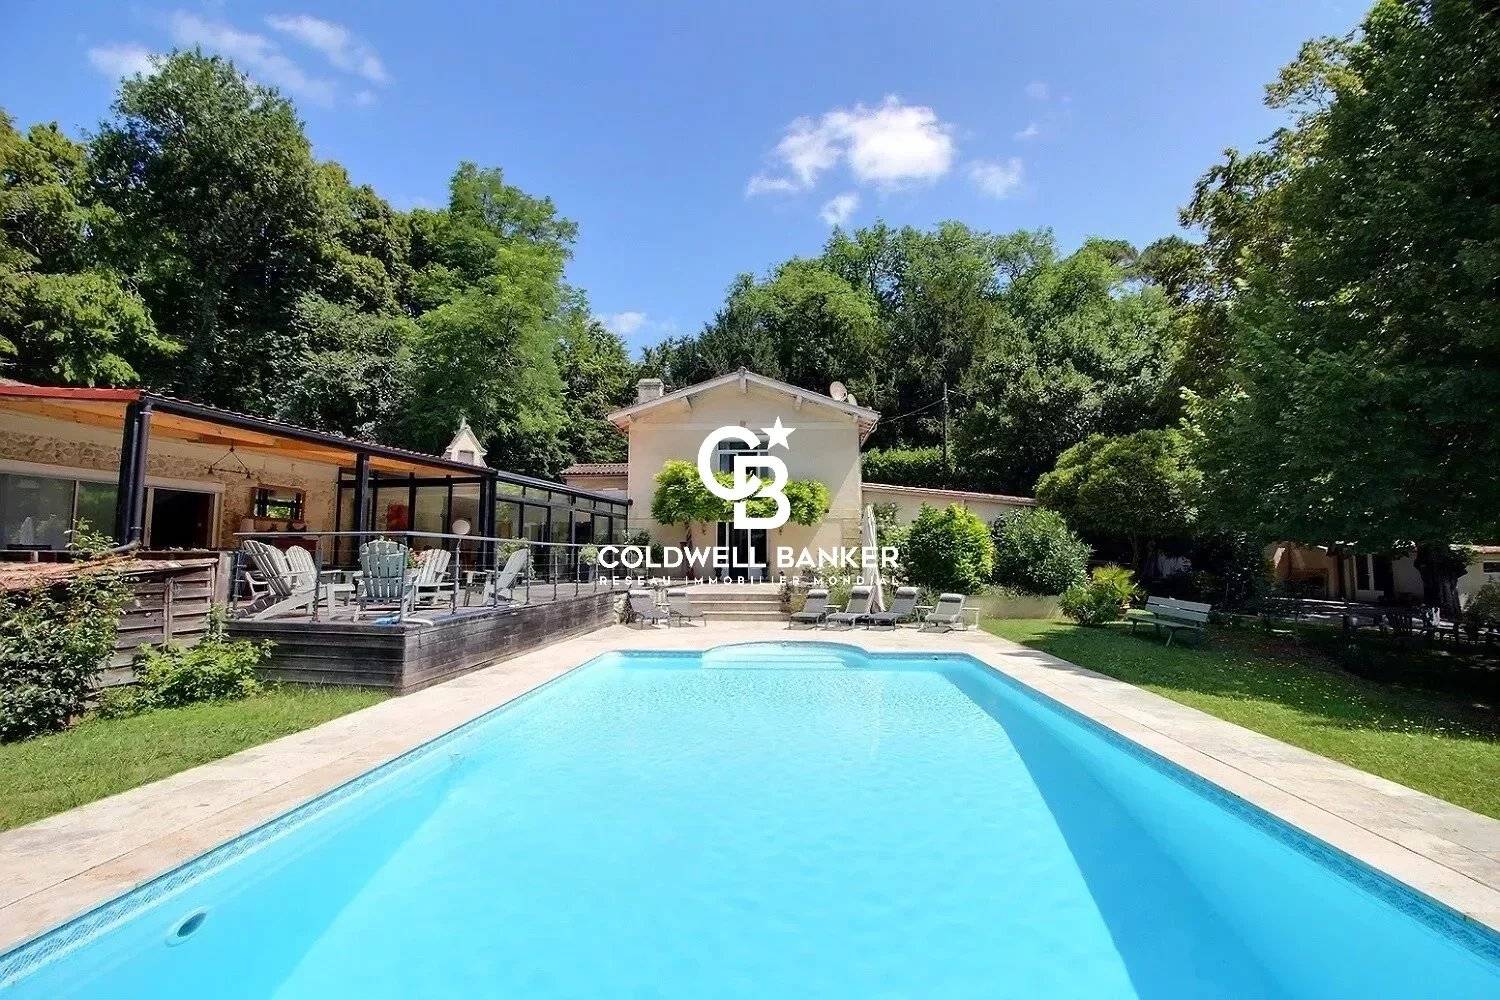 Maison familiale avec 1 hectare de terrain et piscine chauffée à 15 minutes de Bordeaux - Cénac